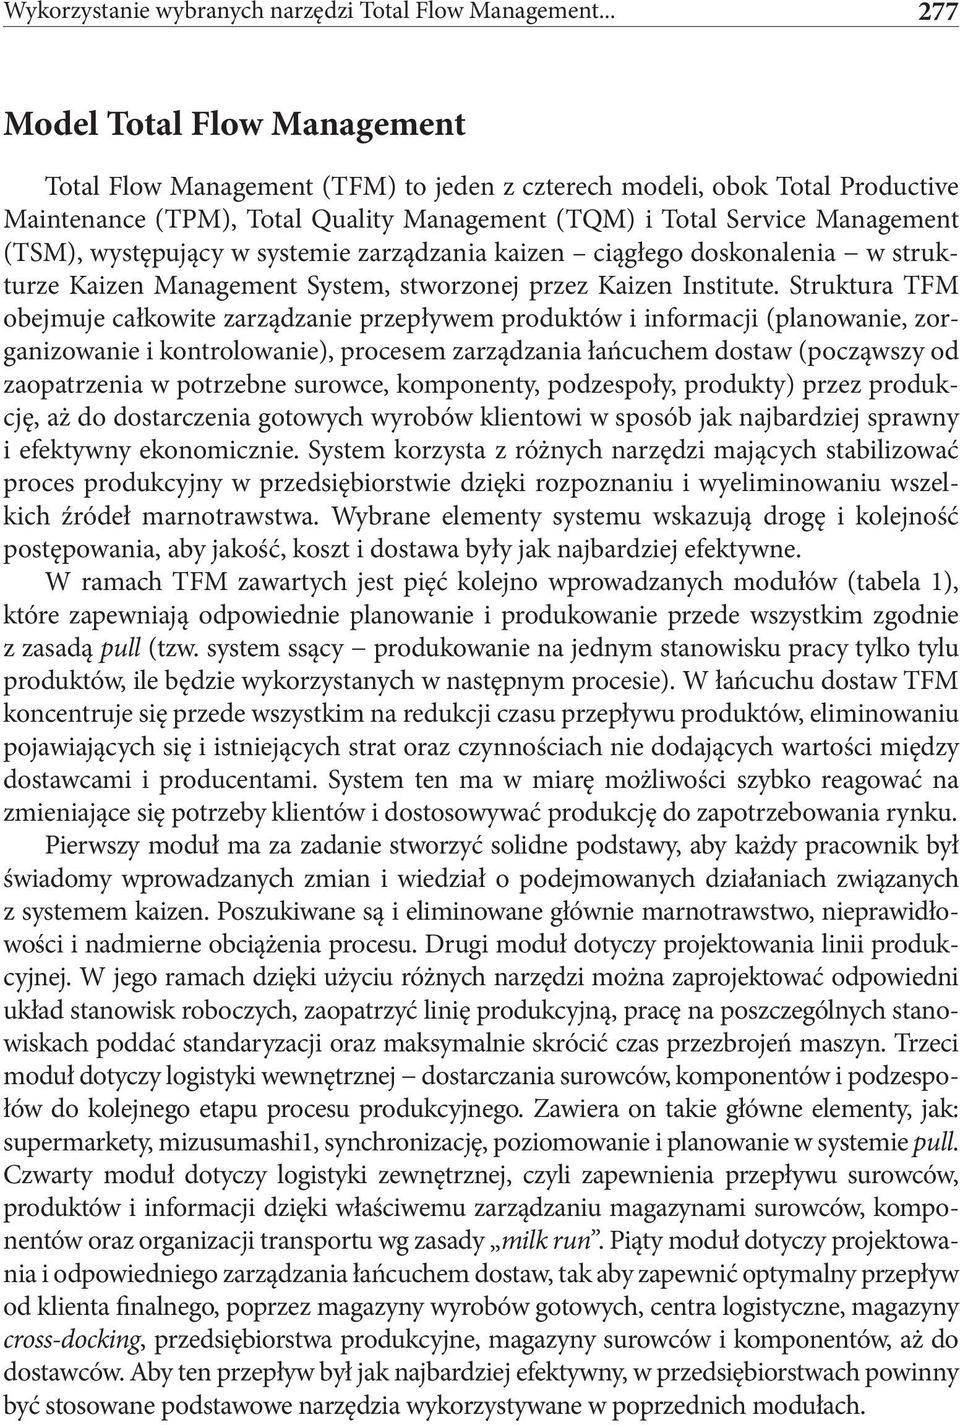 występujący w systemie zarządzania kaizen ciągłego doskonalenia w strukturze Kaizen Management System, stworzonej przez Kaizen Institute.